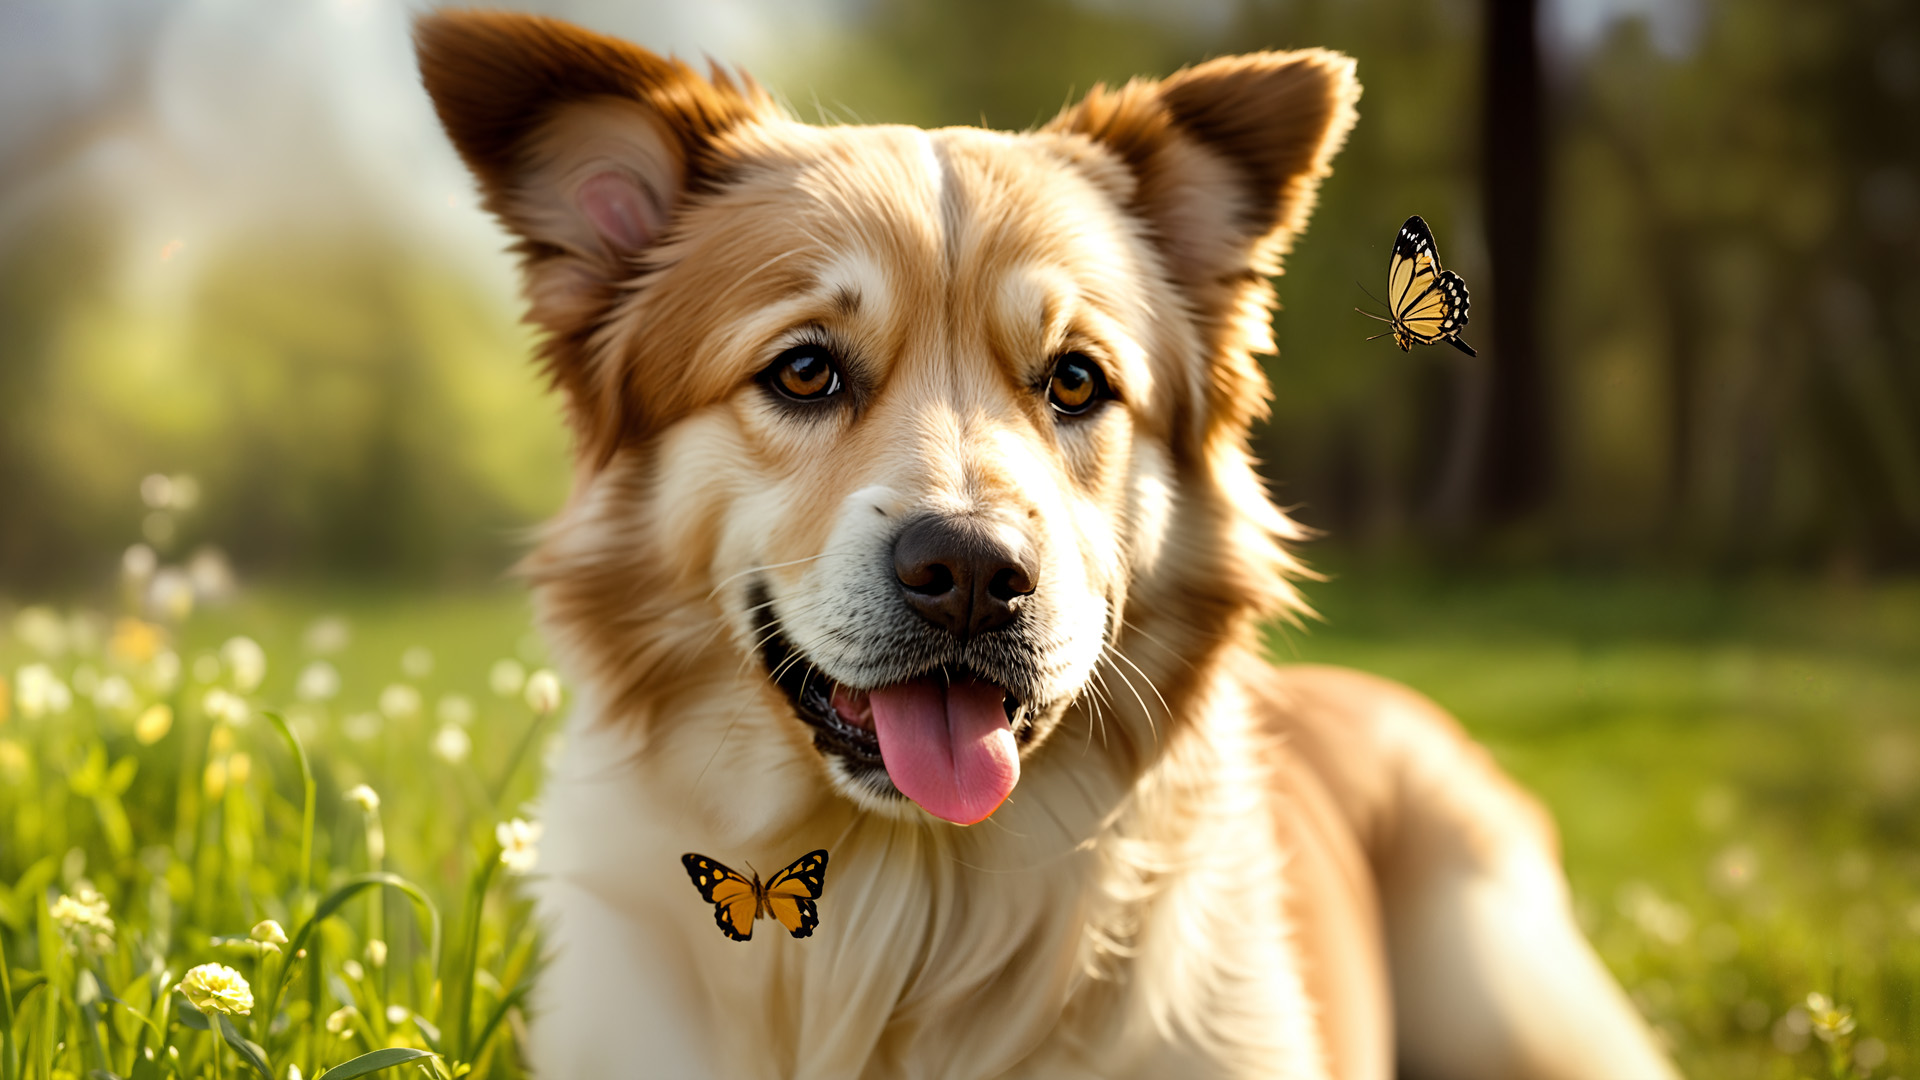 pies, motyle, wiosna, łąka, trawa, kwiaty, przyroda, ciepło, radość, życie, słoneczne światło, brązowy pies, zwierzęta, outdoor